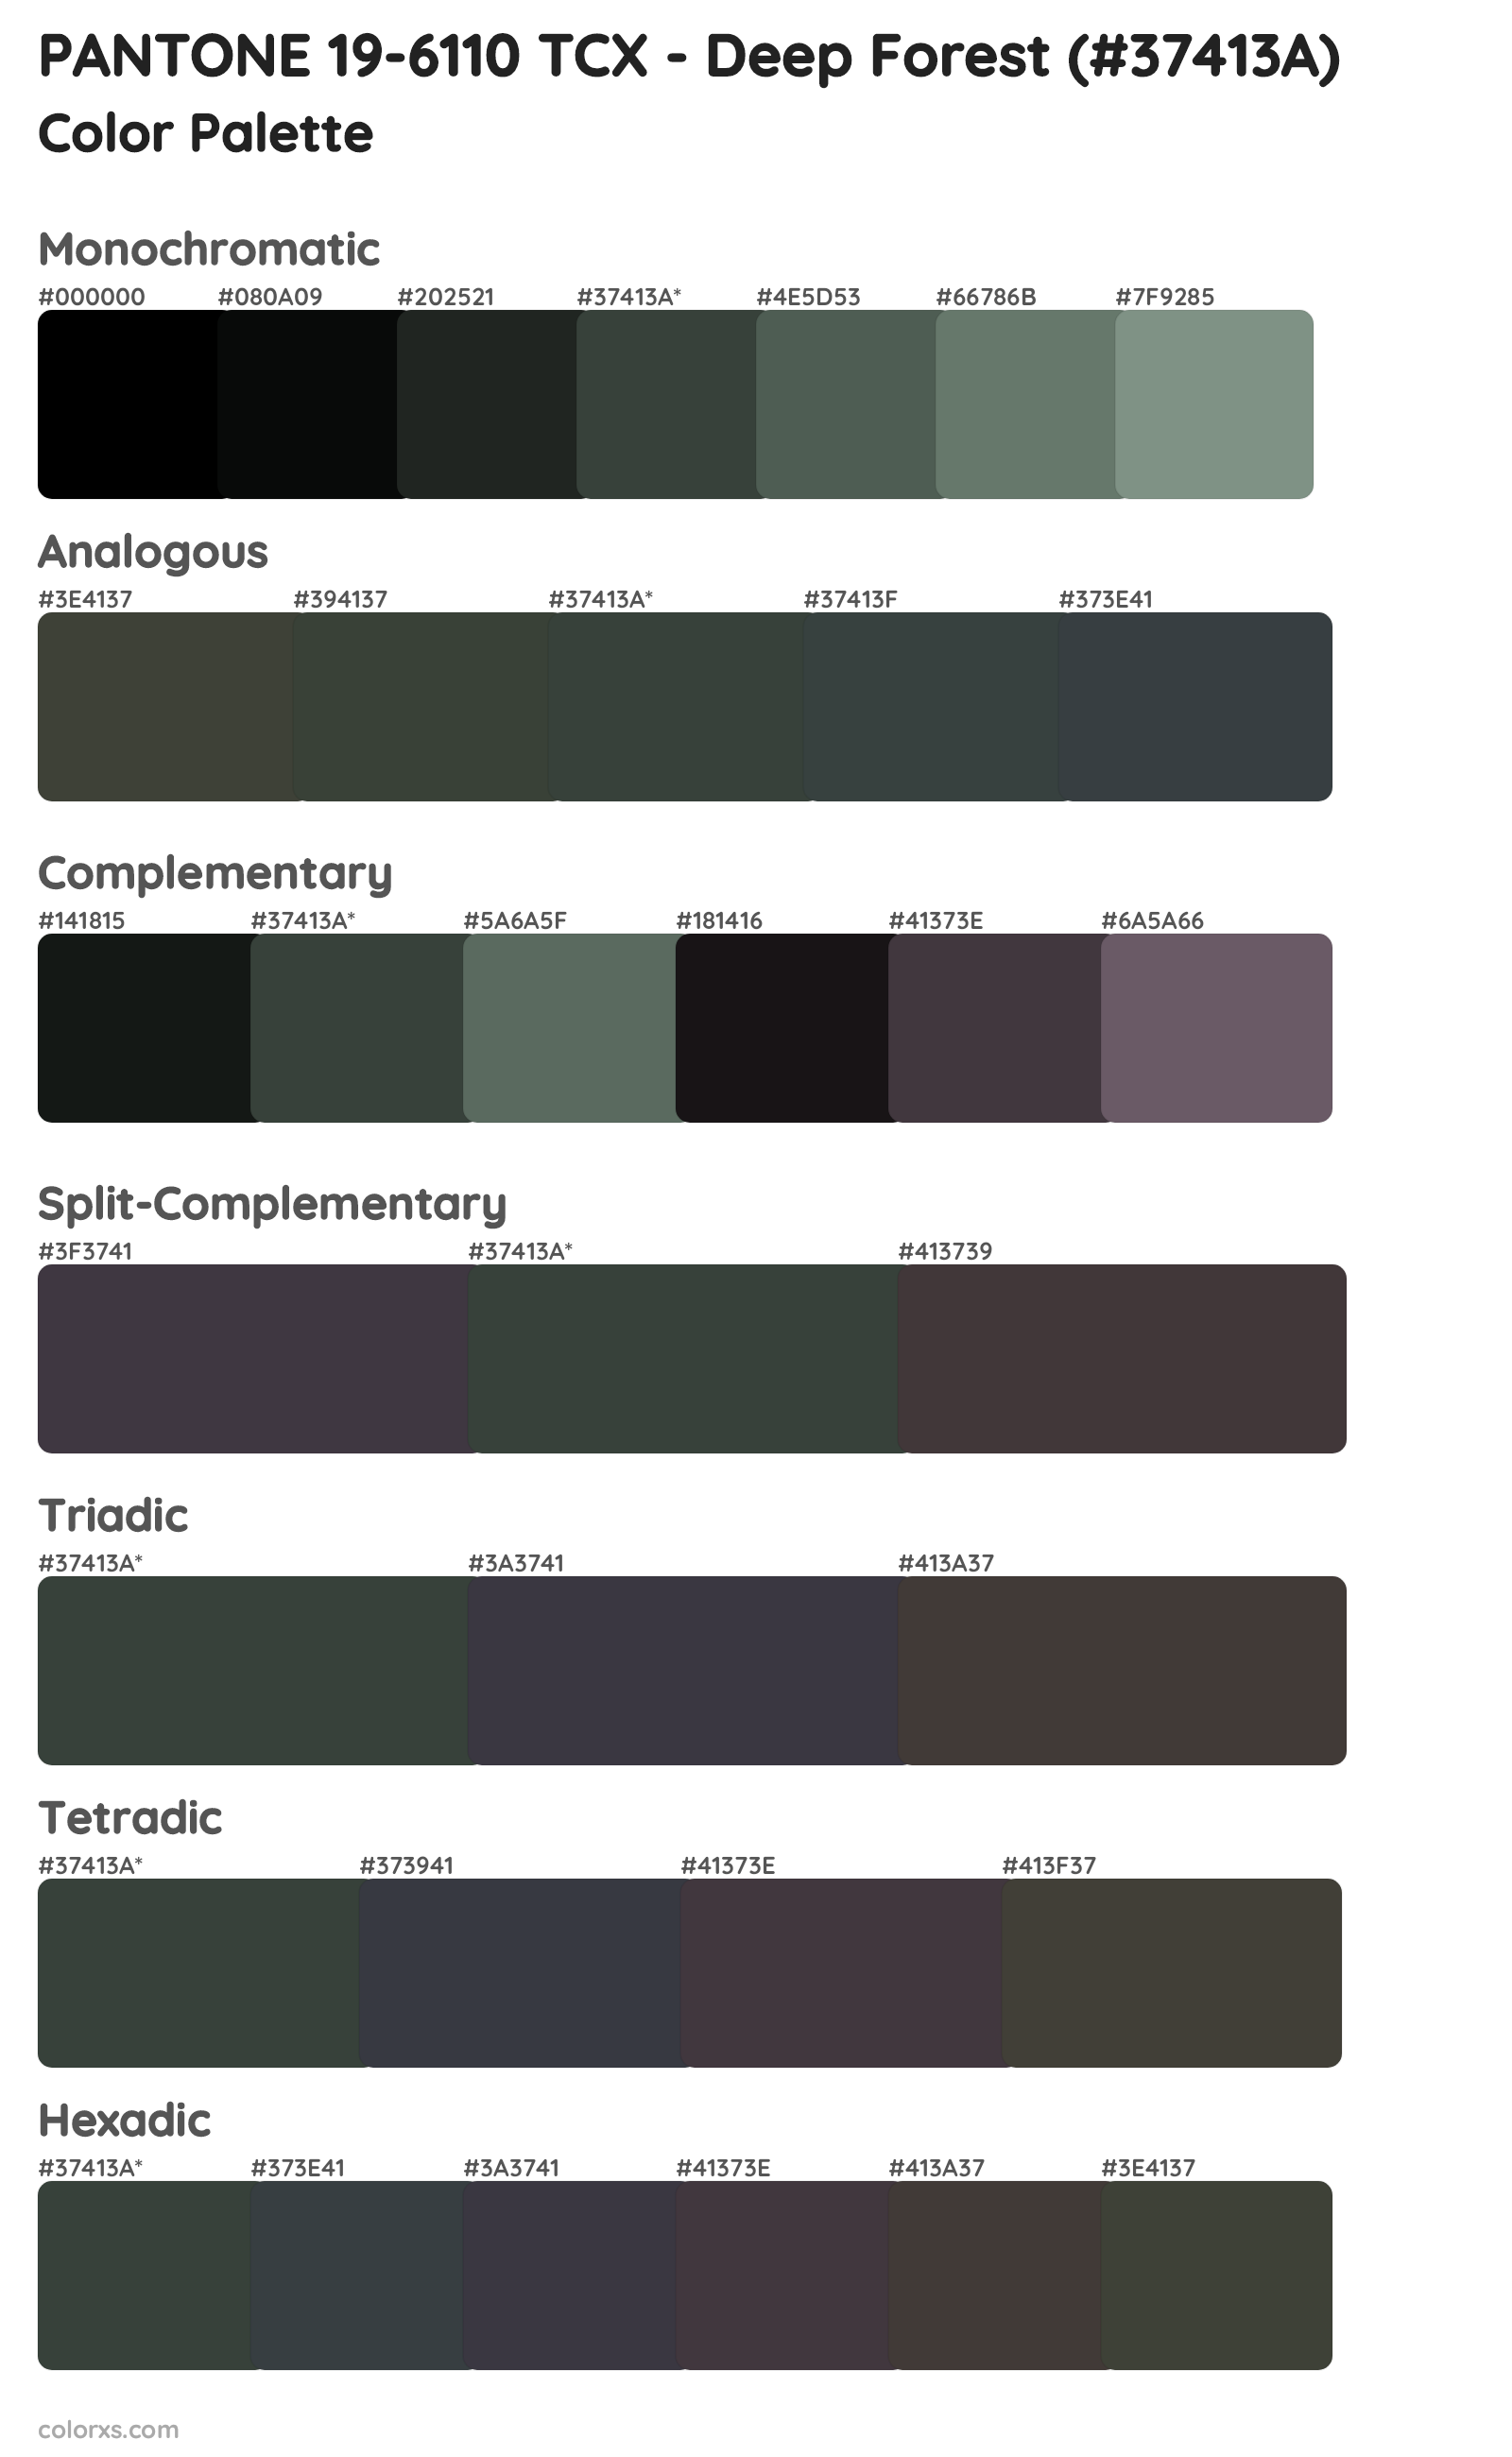 PANTONE 19-6110 TCX - Deep Forest Color Scheme Palettes